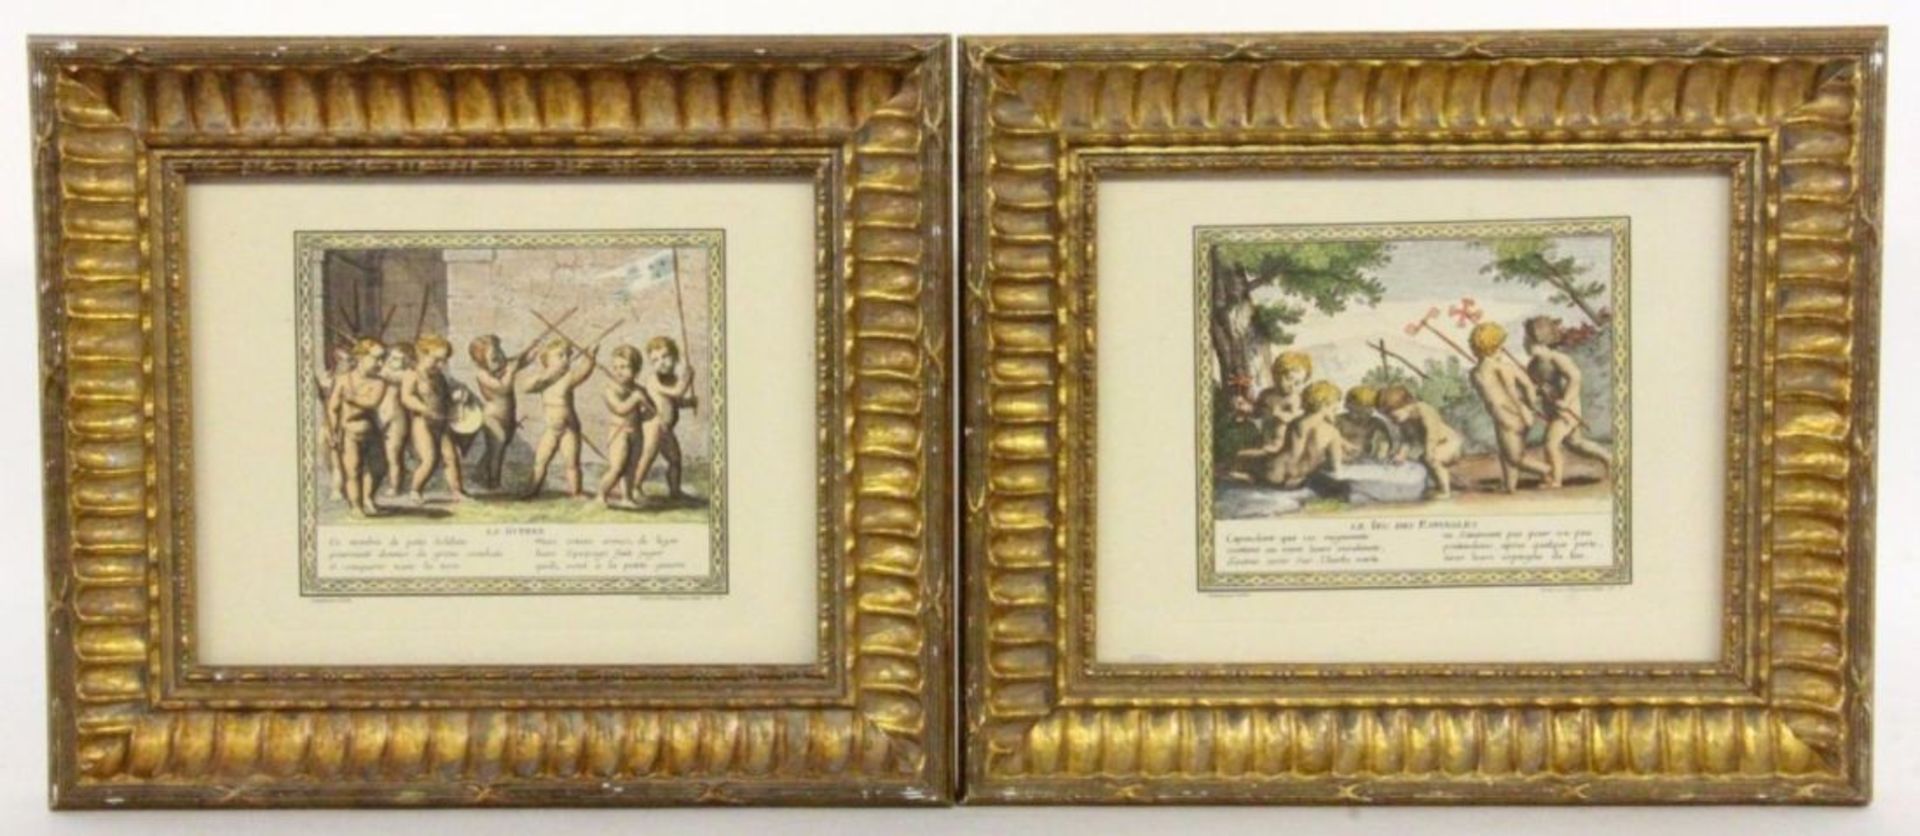 STELLA, JACQUES (nach) Lyon 1596 - 1657 Paris 2 Kolorierte Drucke. Je ca. 19x24cm, gerahmt (After)